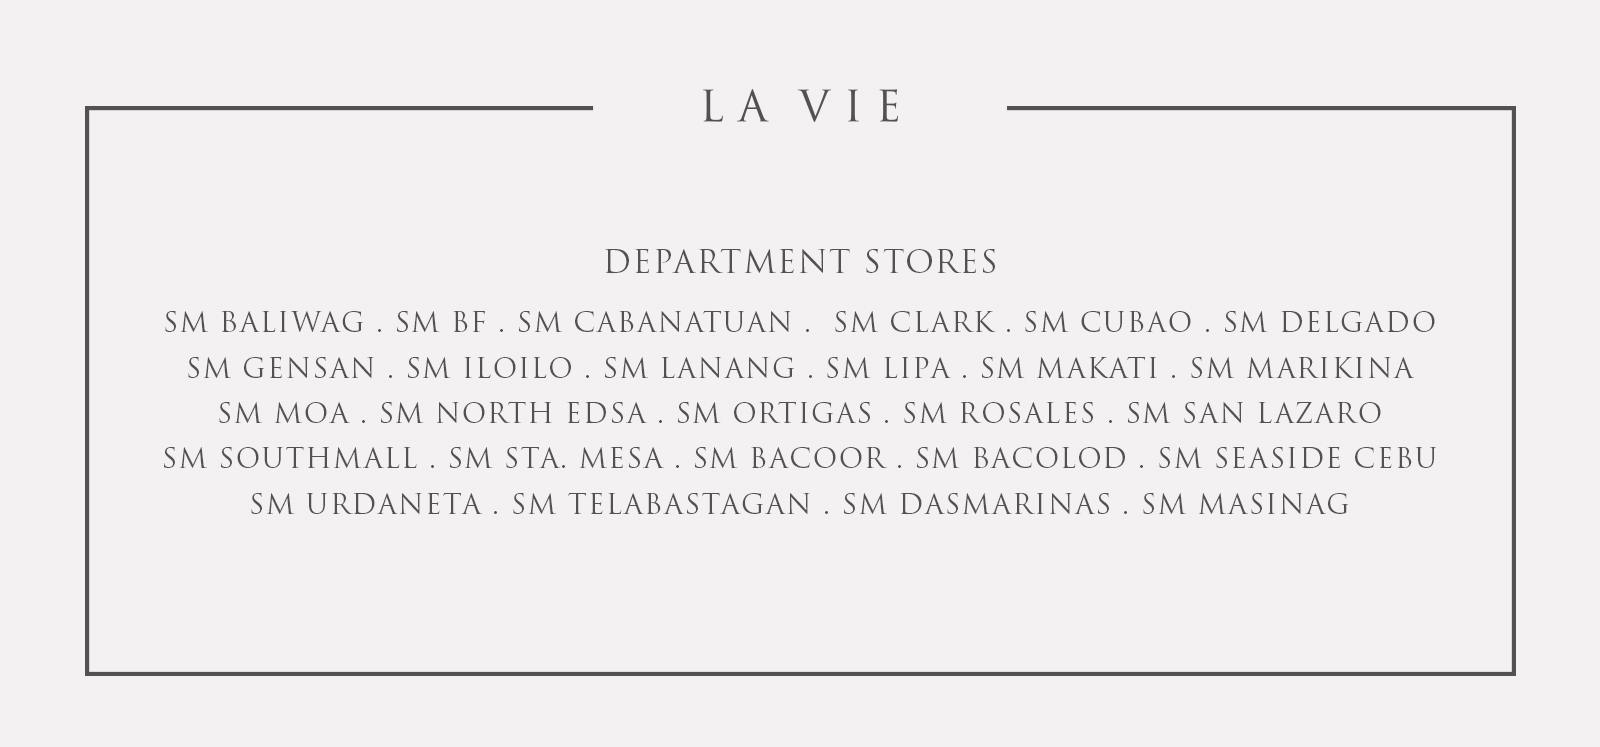 LAVIE DEPARTMENT STORES